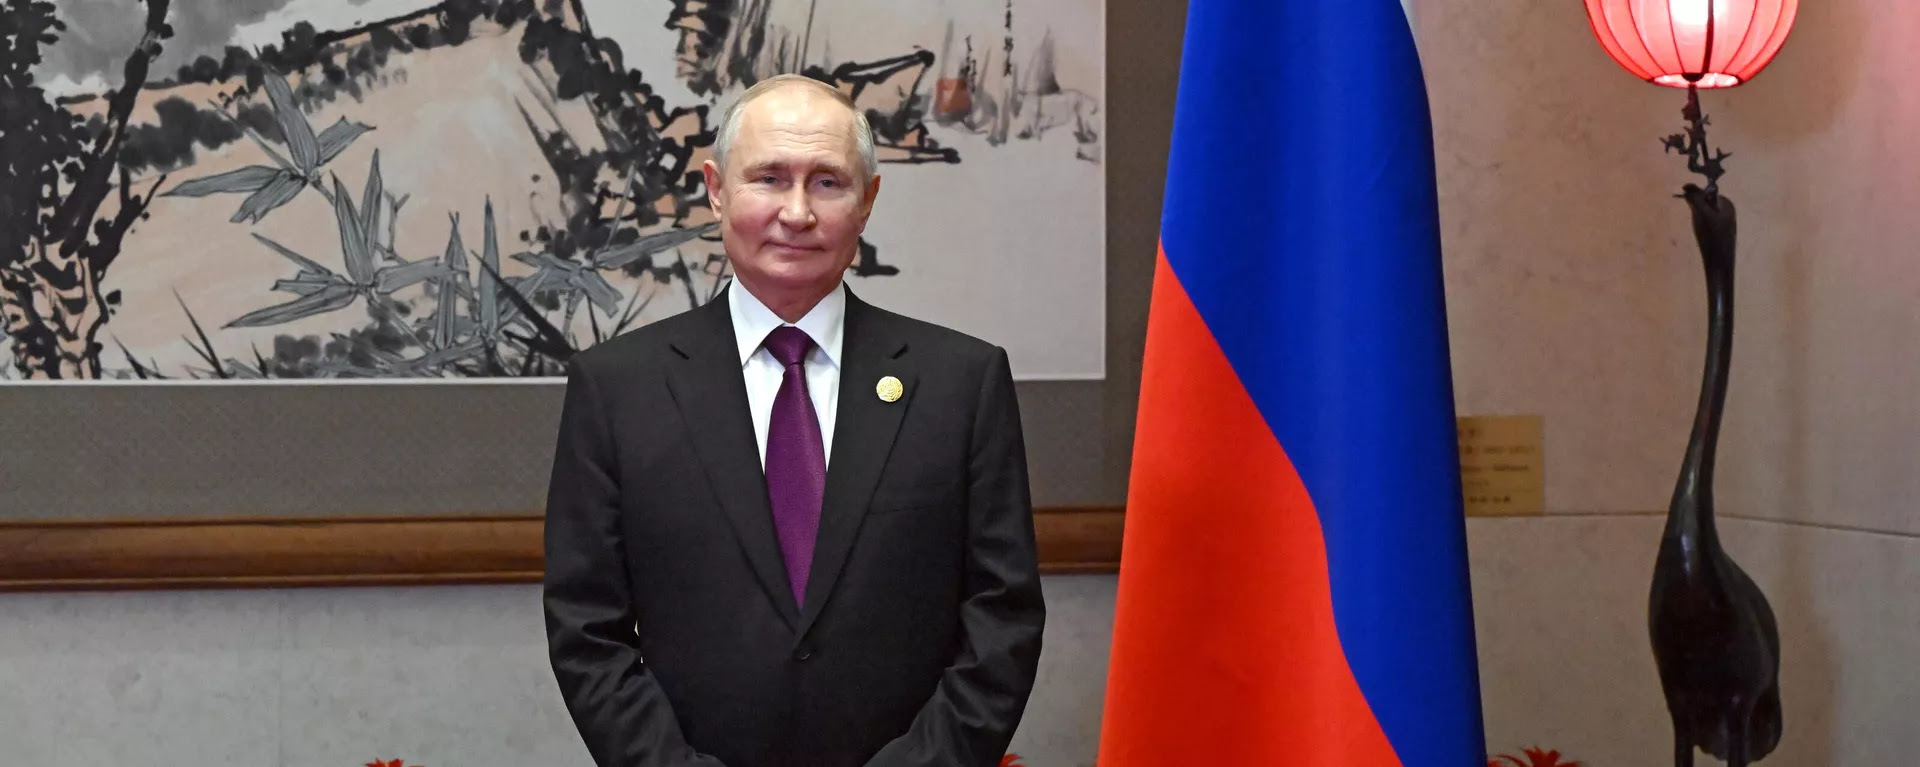 Ο Ρώσος πρόεδρος Βλαντιμίρ Πούτιν συμμετέχει στο Φόρουμ Belt and Road στο Πεκίνο στις 17 Οκτωβρίου 2023. - Sputnik International, 1920, 18.10.2023